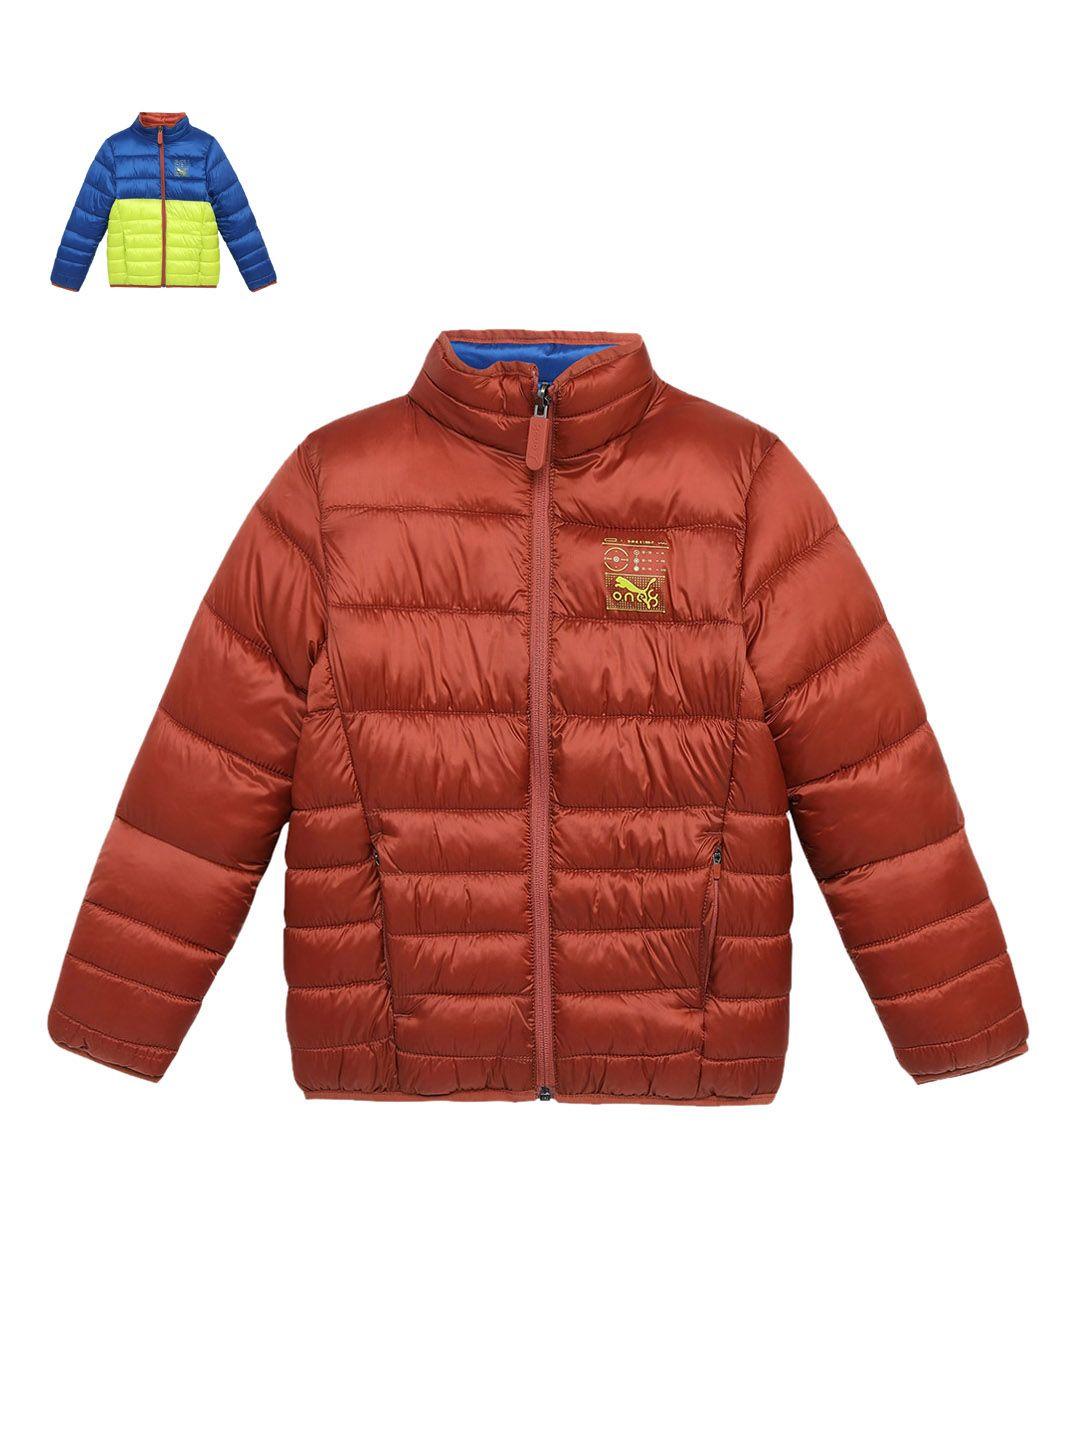 one8 x puma boys reversible padded jacket